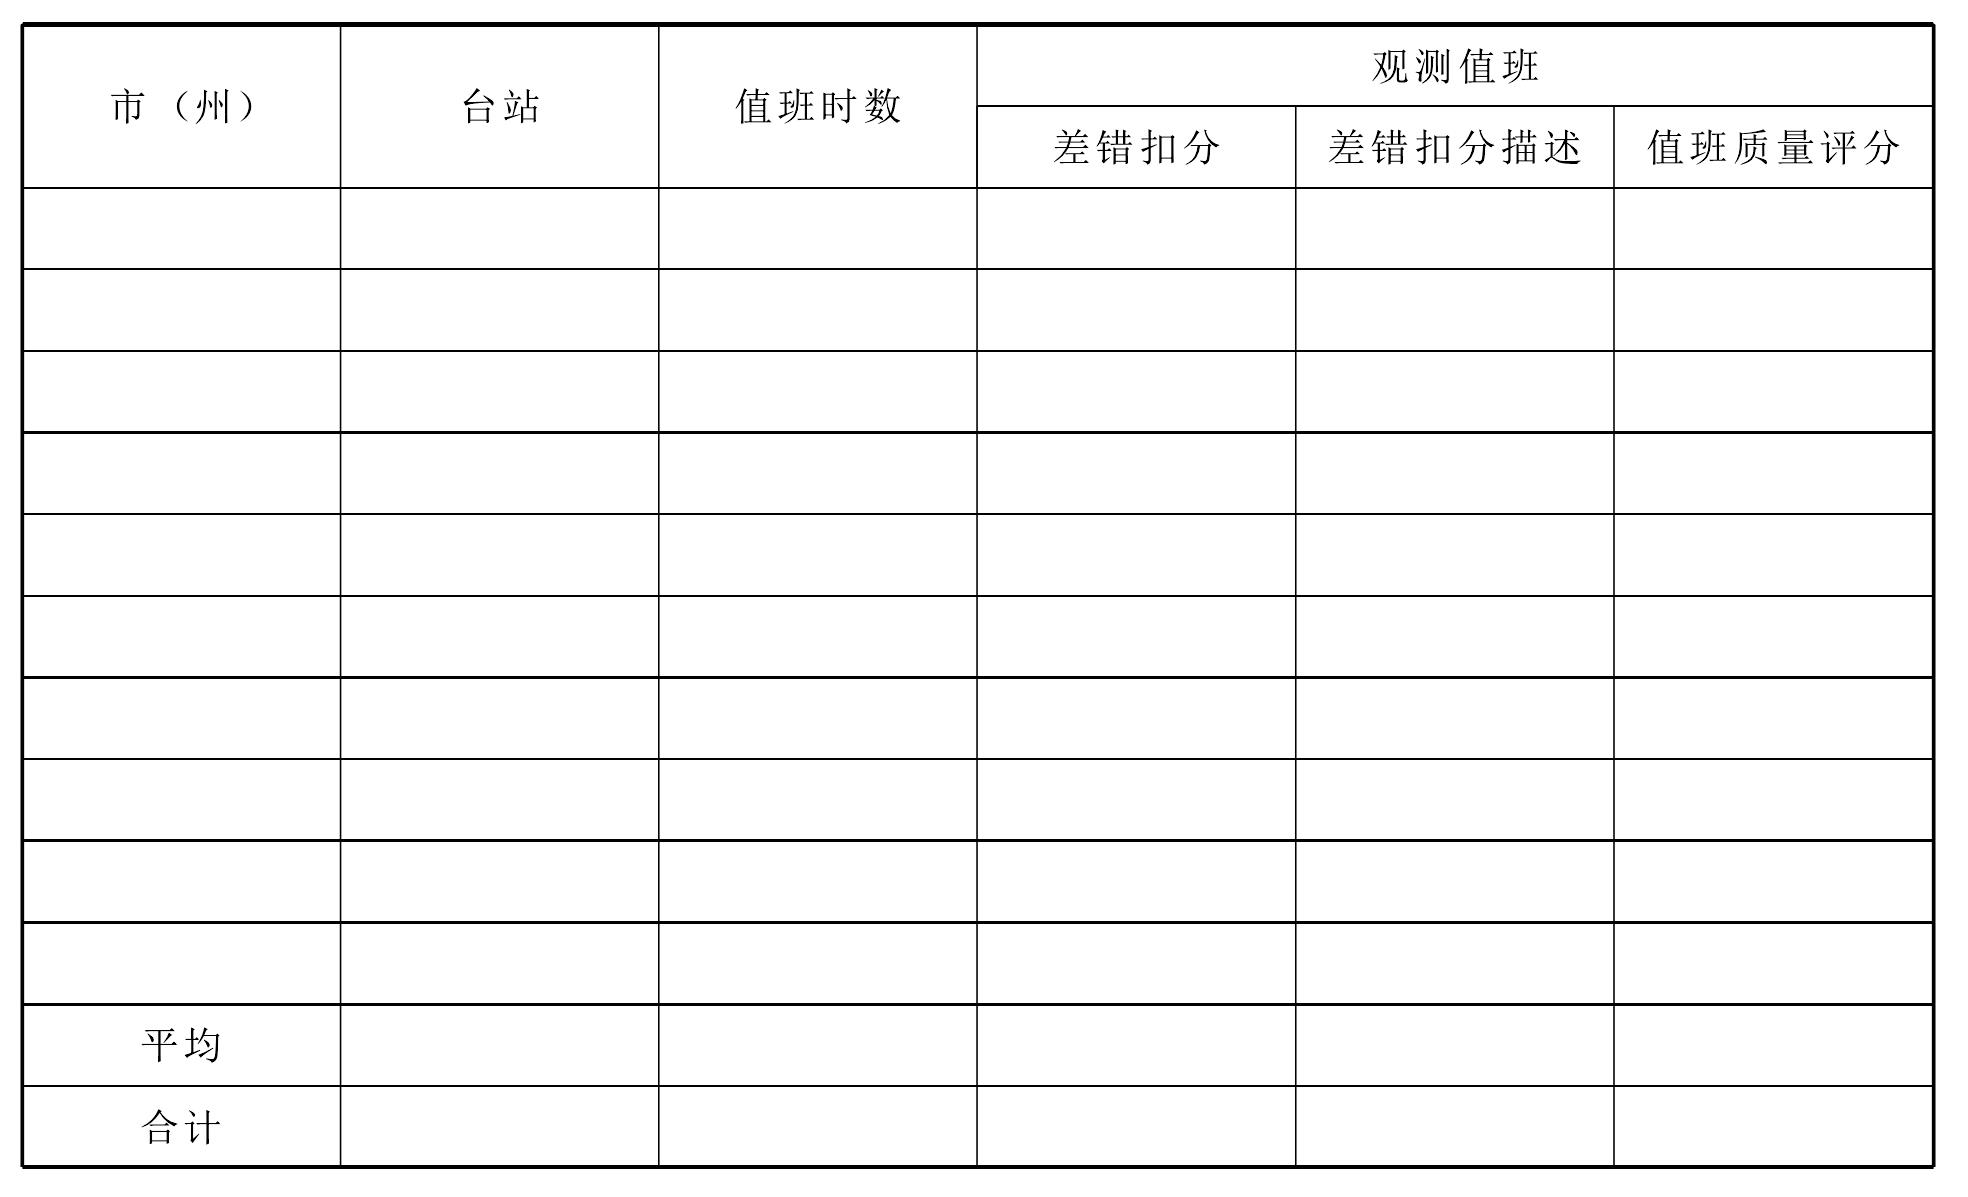 四川省地面气象观测质量考核办法(试行)